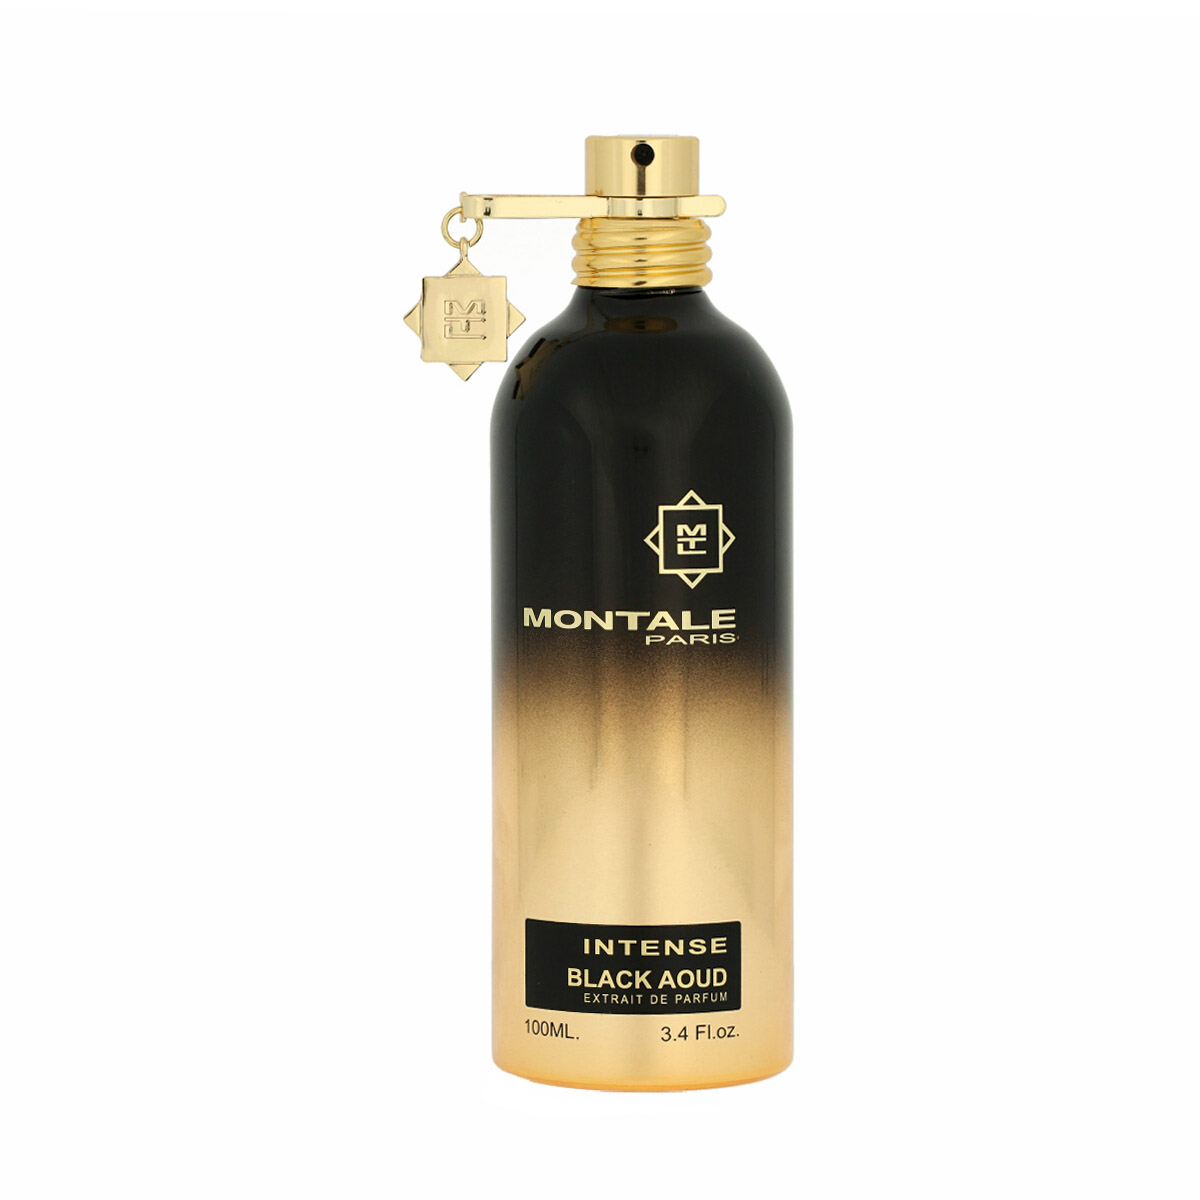 Montale Paris Intense Black Aoud Extrait De Parfum 20 ml NIŠINIAI kvepalų mėginukas (atomaizeris) Unisex Parfum